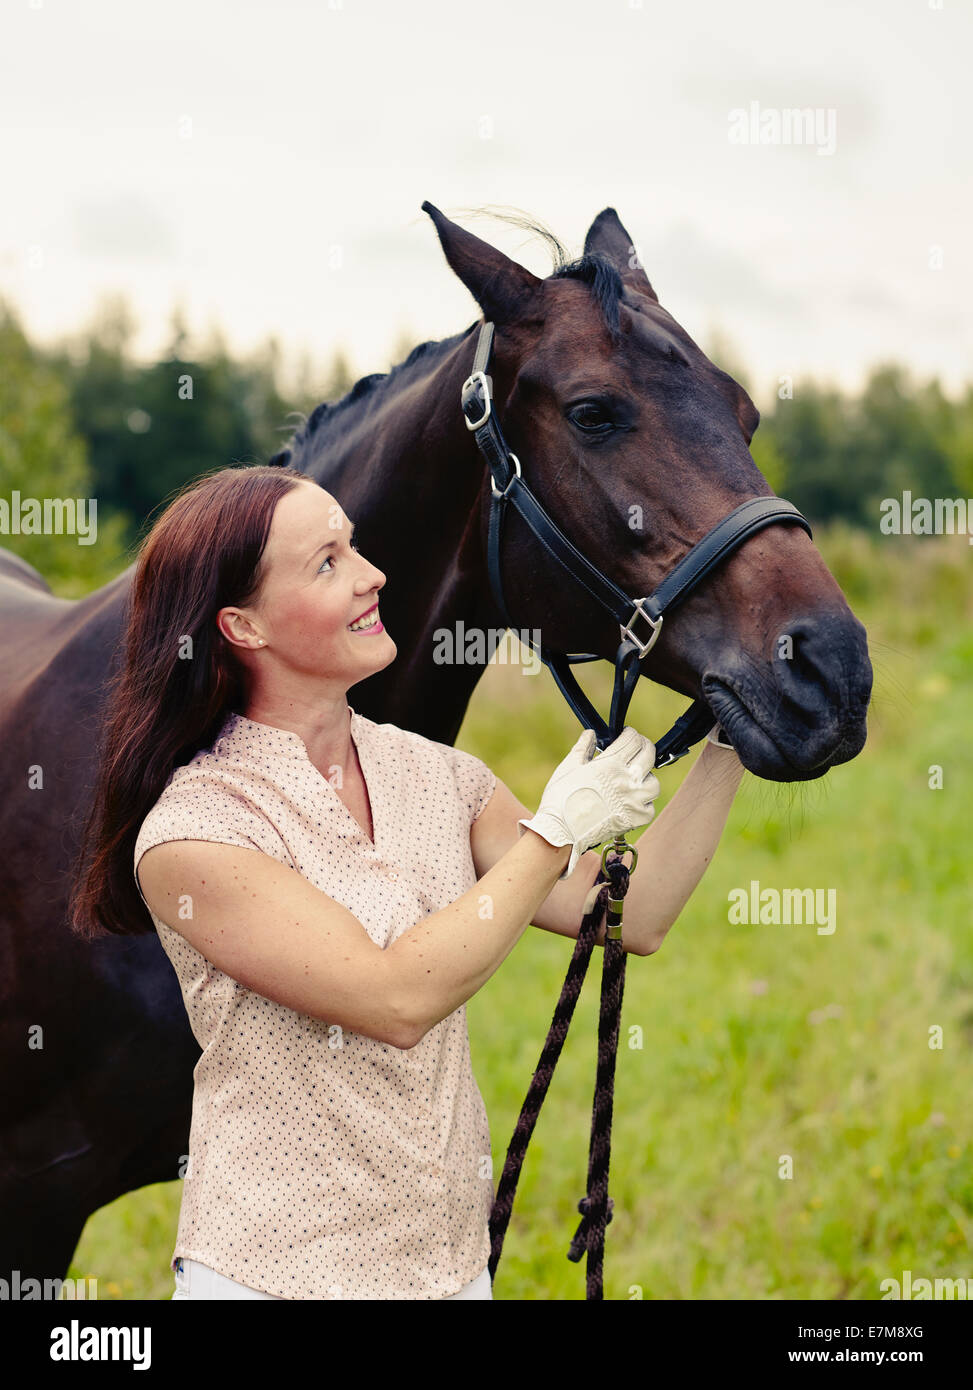 Attraktive Frau und Pferd im Feld überqueren bearbeitetes Bild Stockfoto